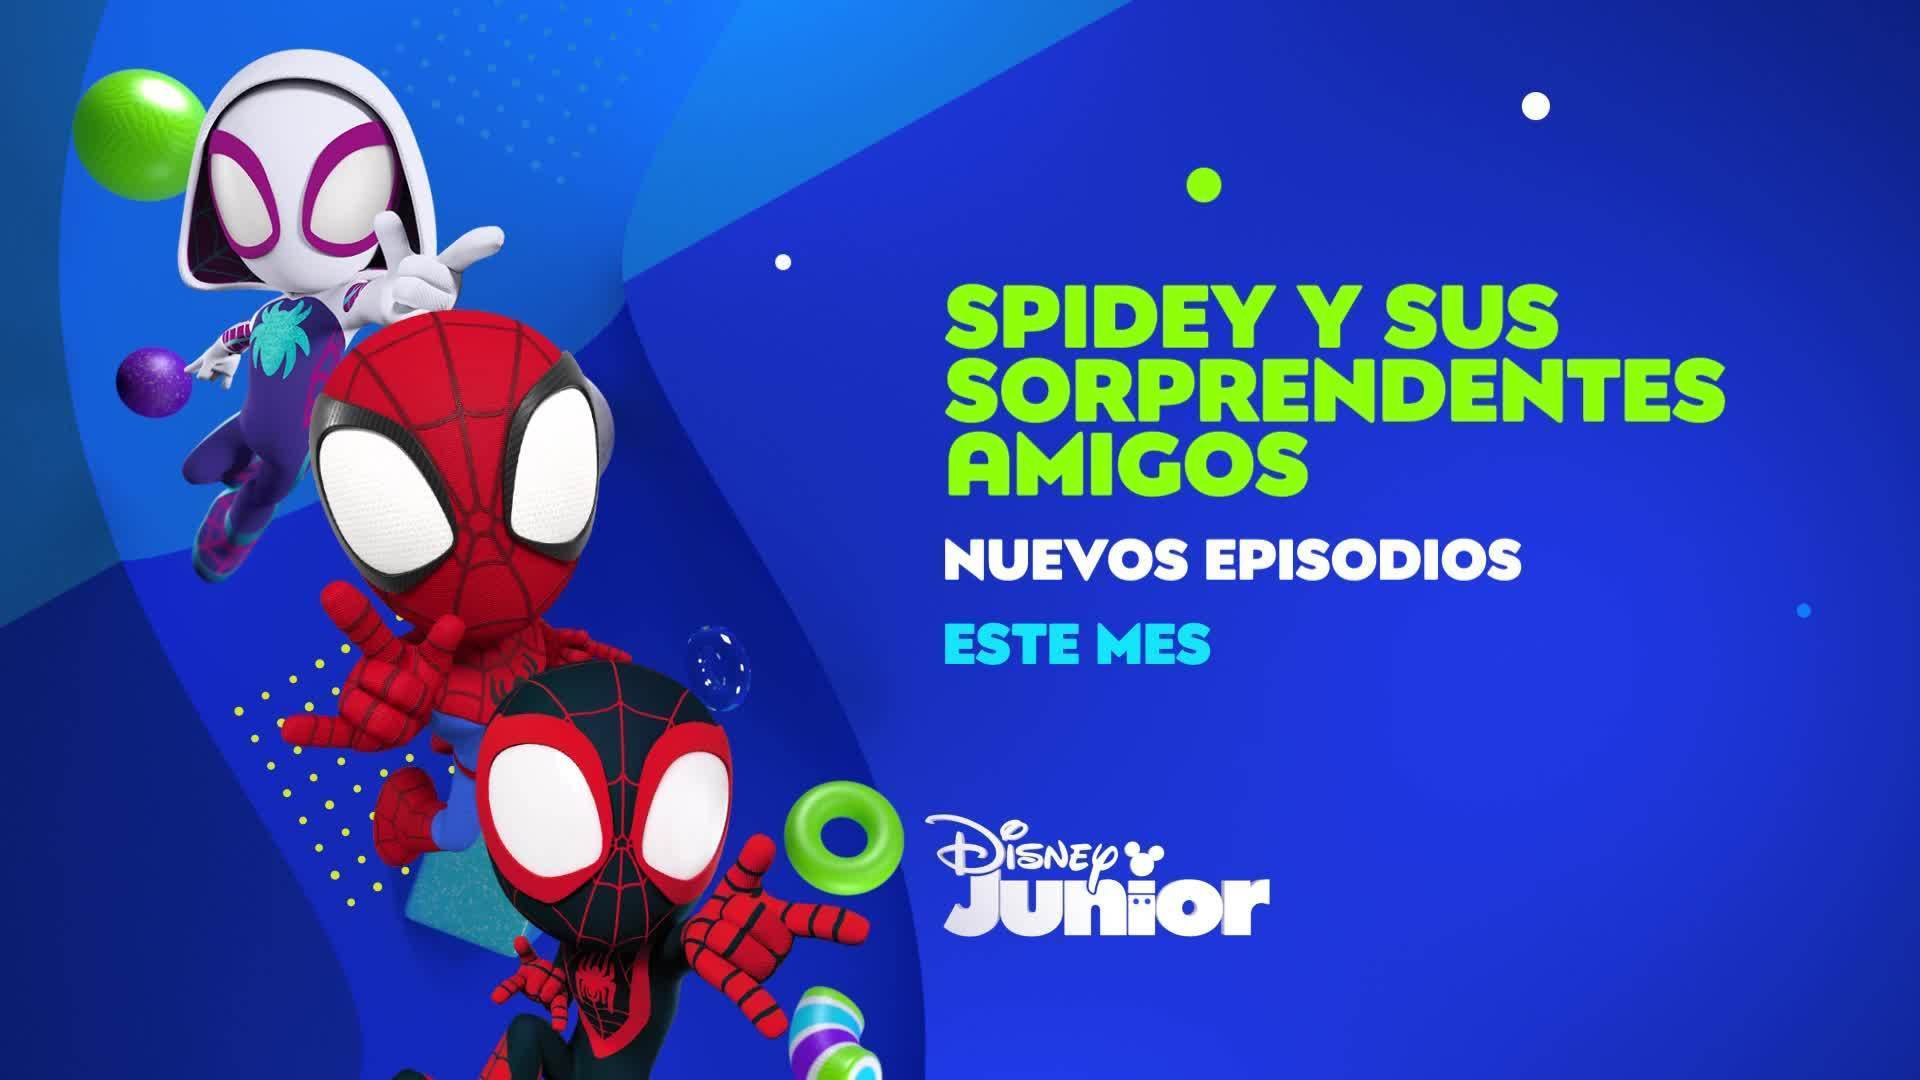 Spidey y sus sorprendentes amigos aterrizaron en Disney Junior